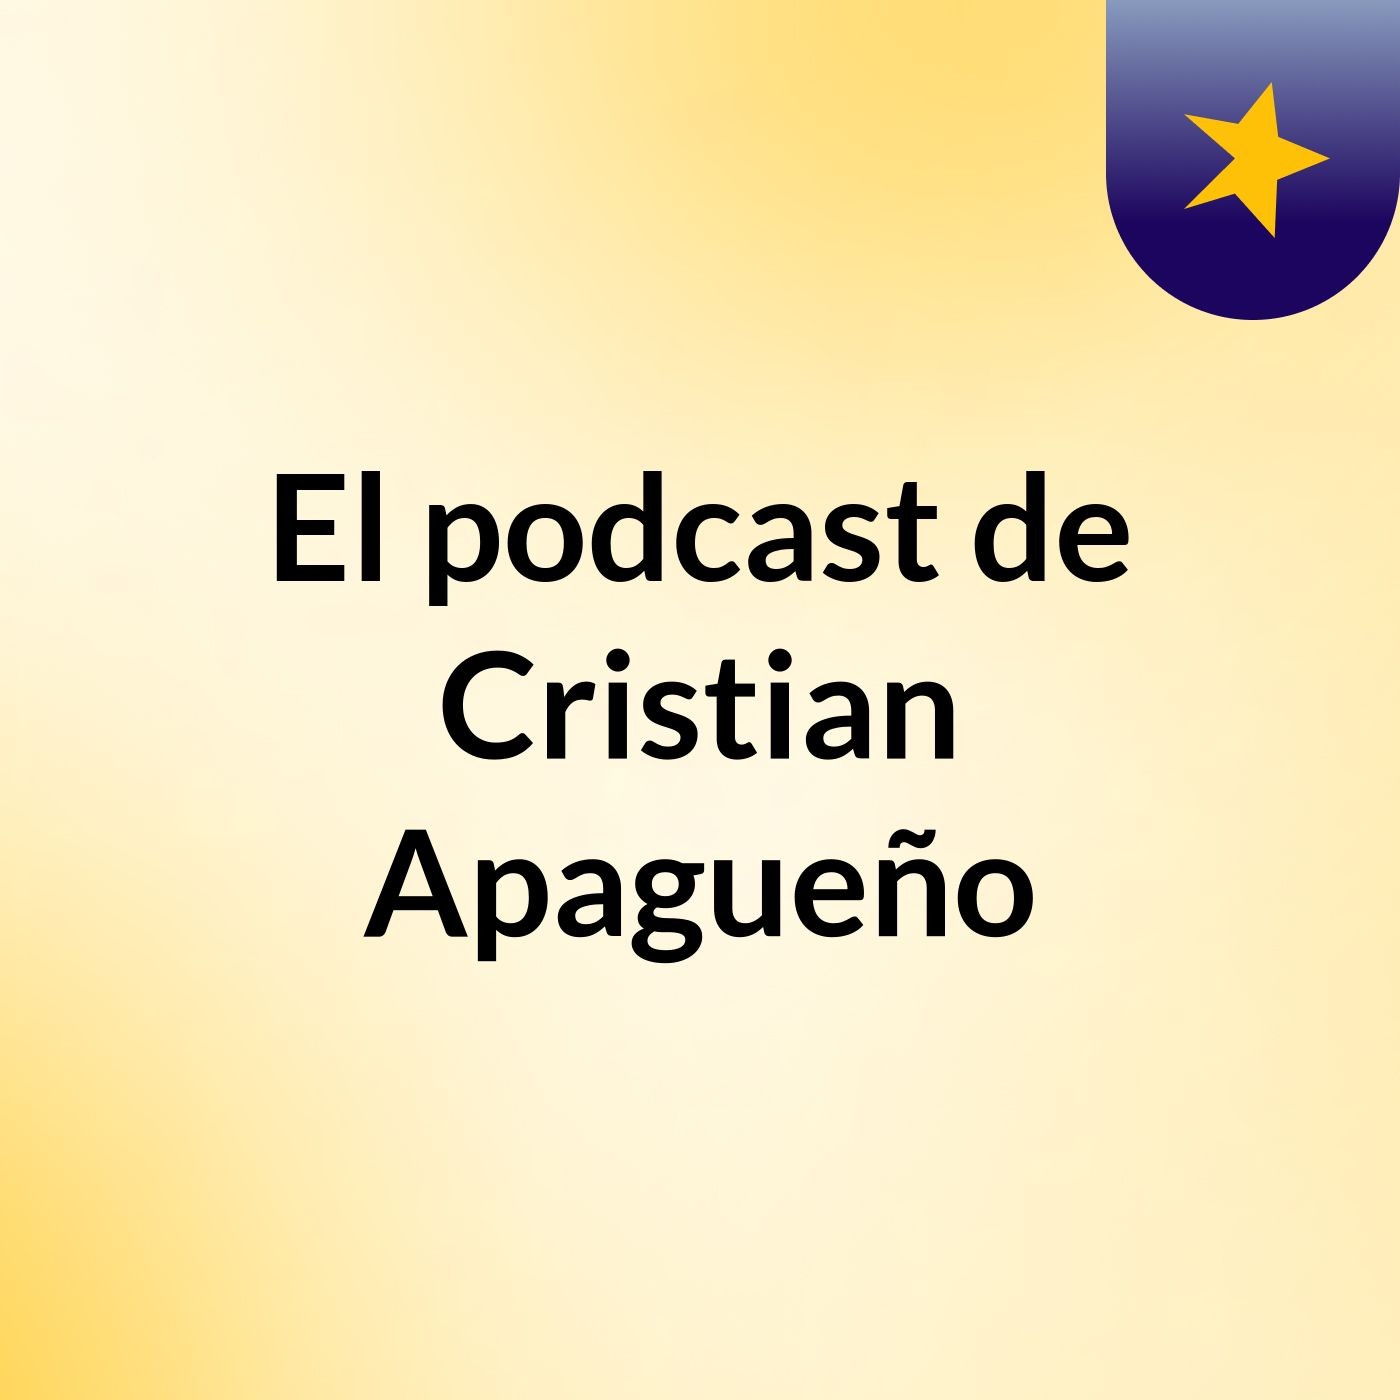 El podcast de Cristian Apagueño